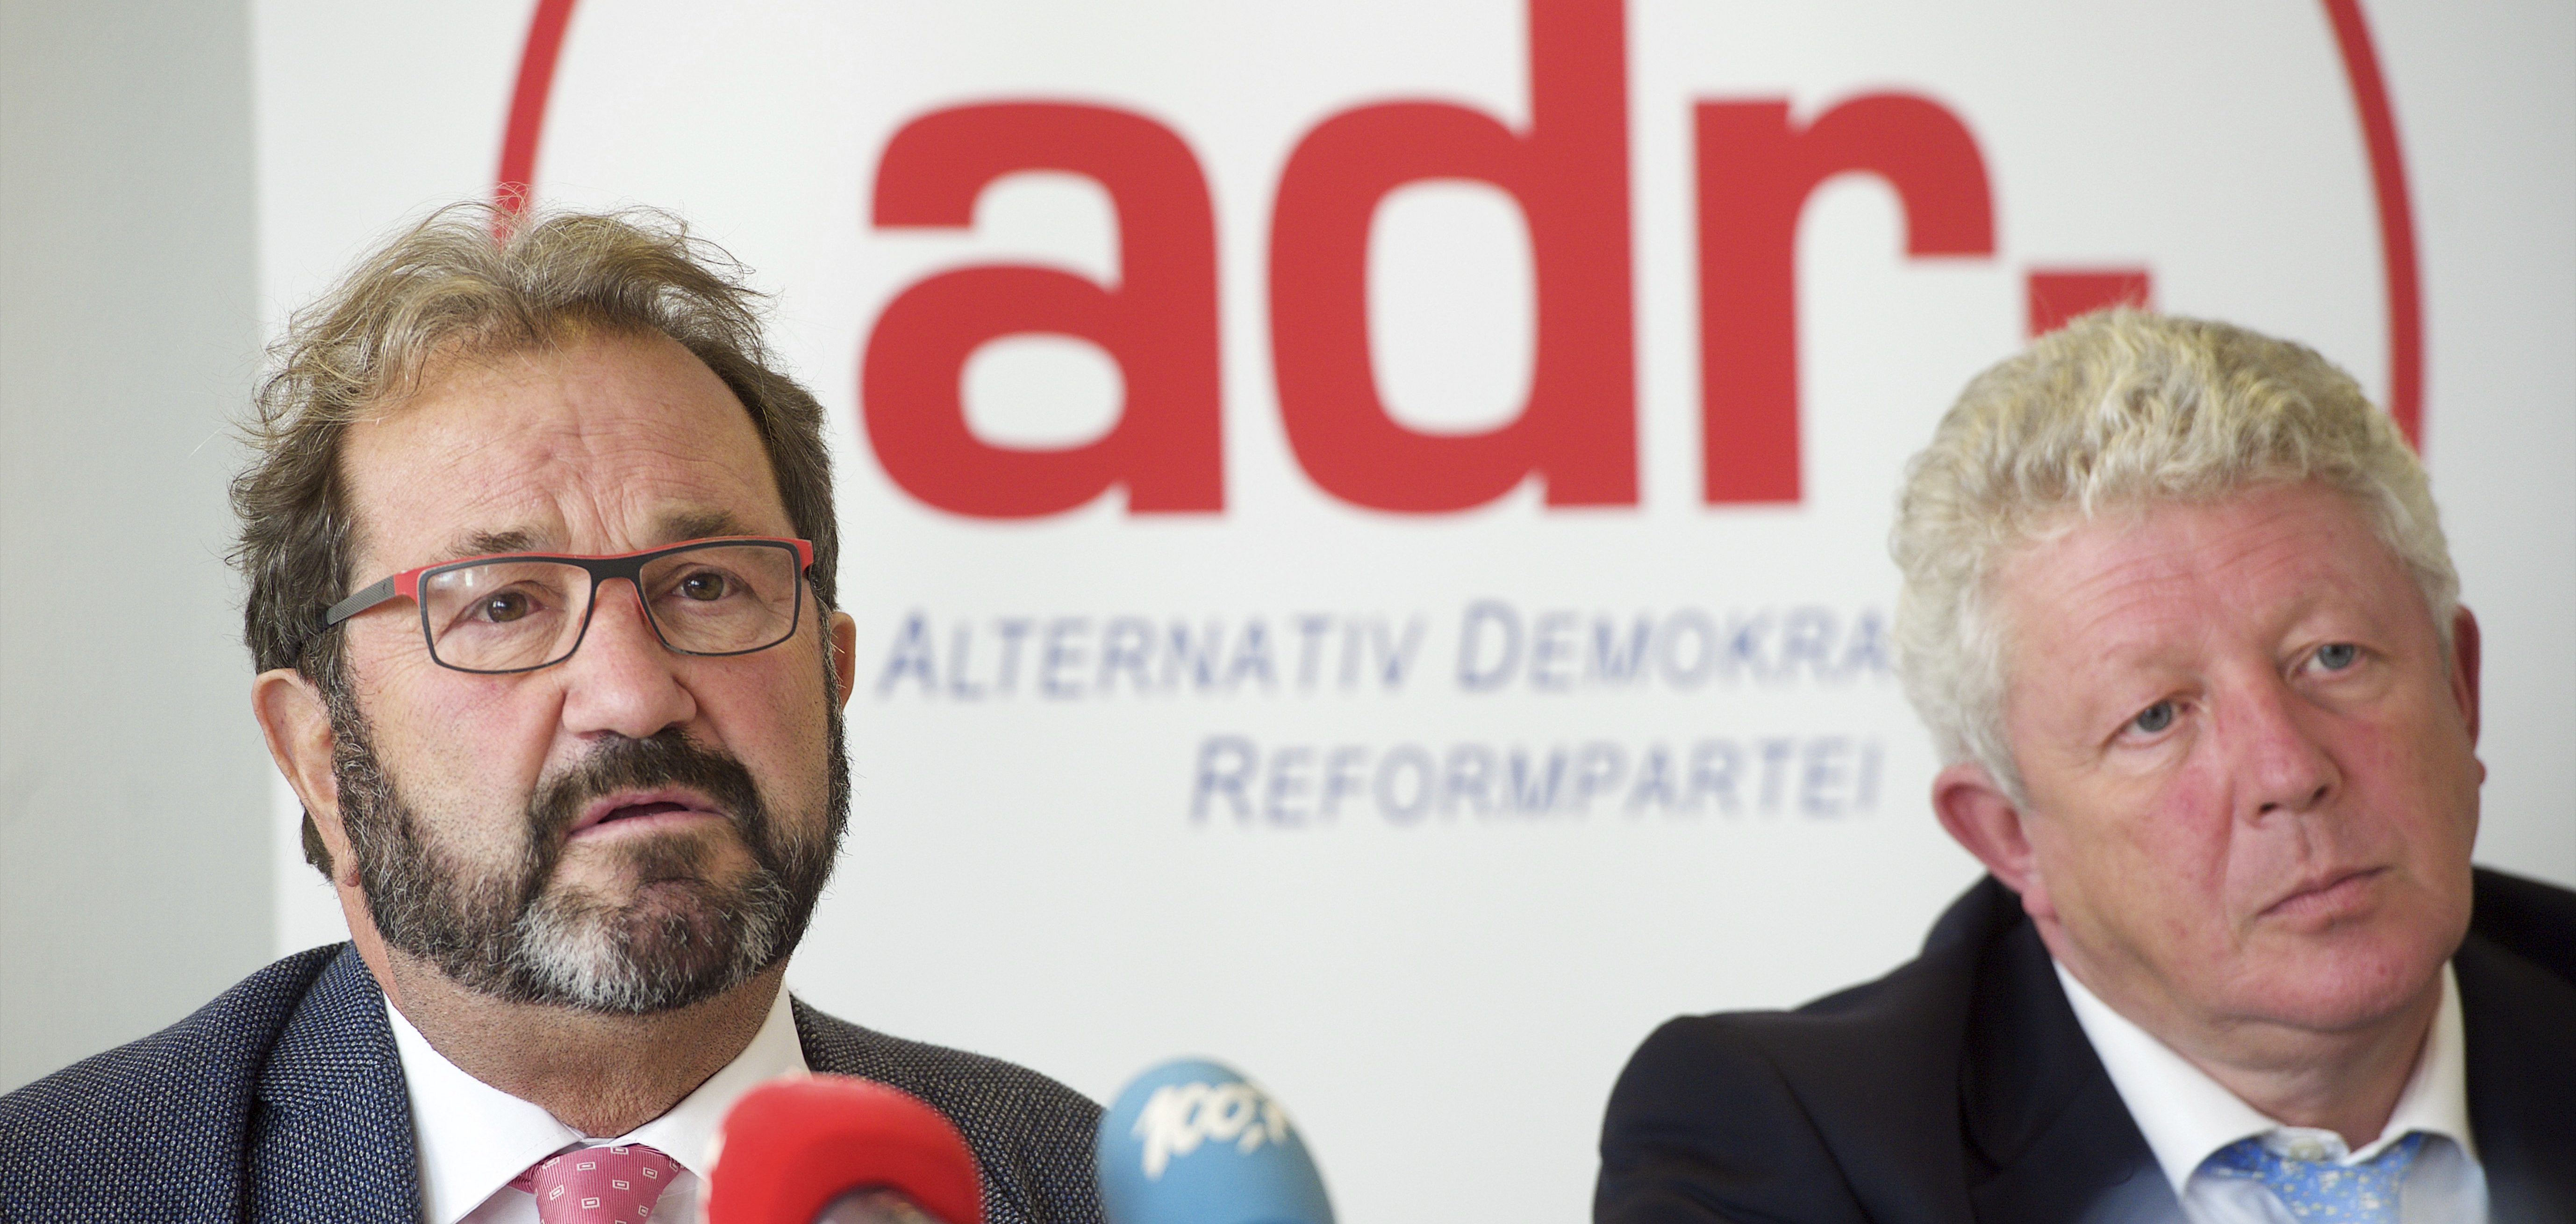 Die Bremspedale der ADR: Oppositionspartei bleibt bei Plänen für Wachstum und Klima vage